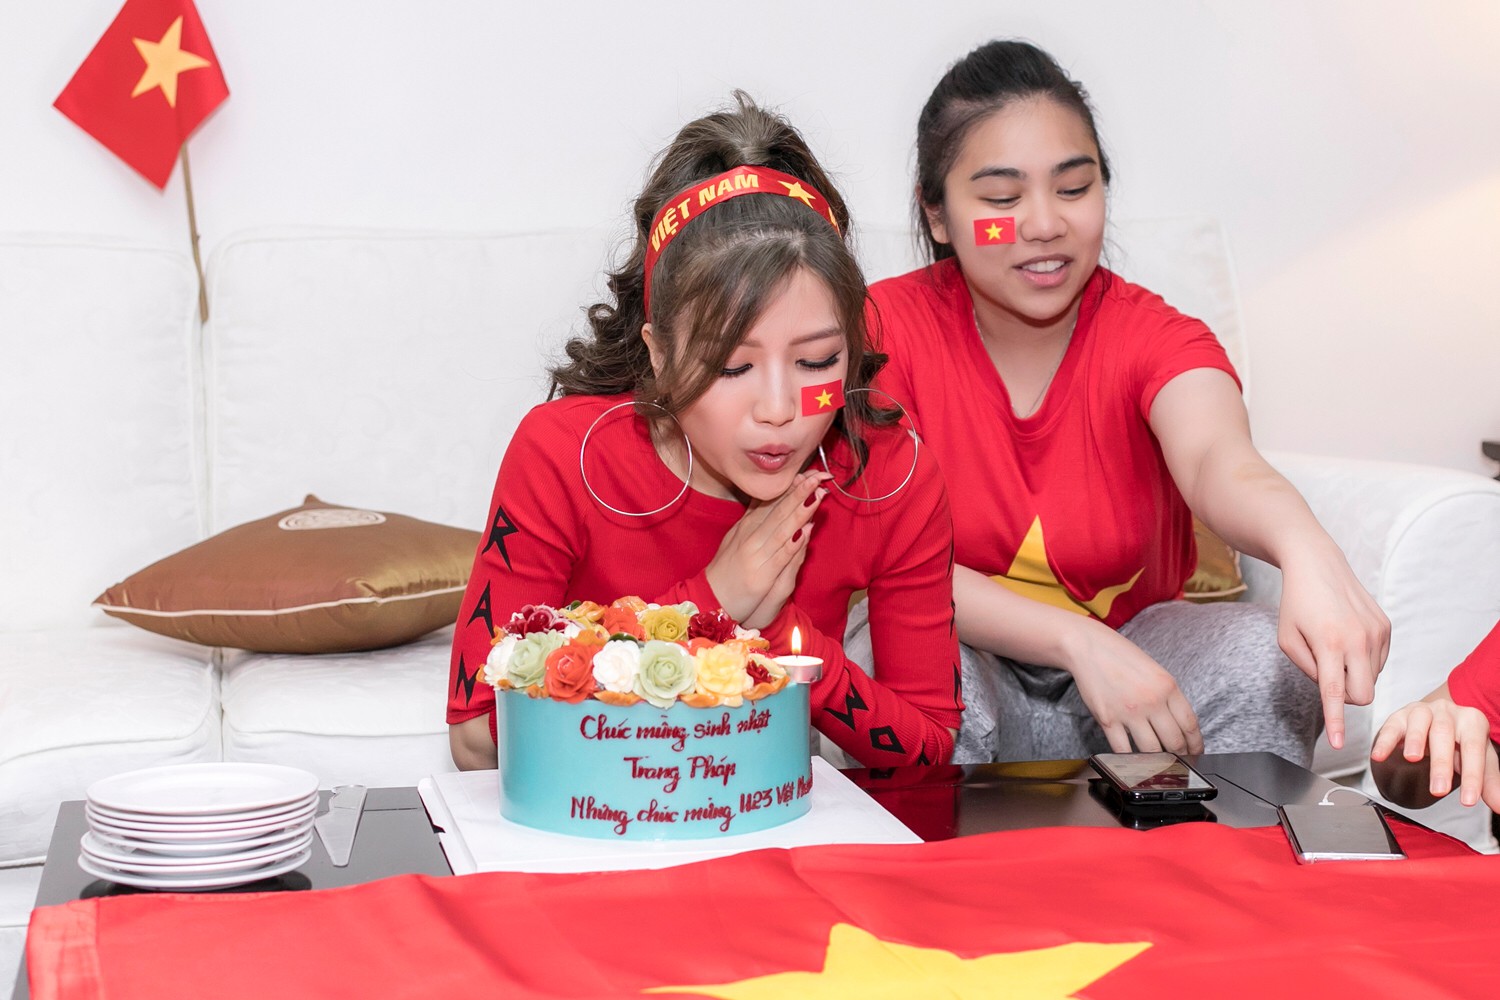 Cuồng nhiệt như Trang Pháp: Tổ chức sinh nhật kết hợp cổ vũ U23 Việt Nam - Ảnh 2.